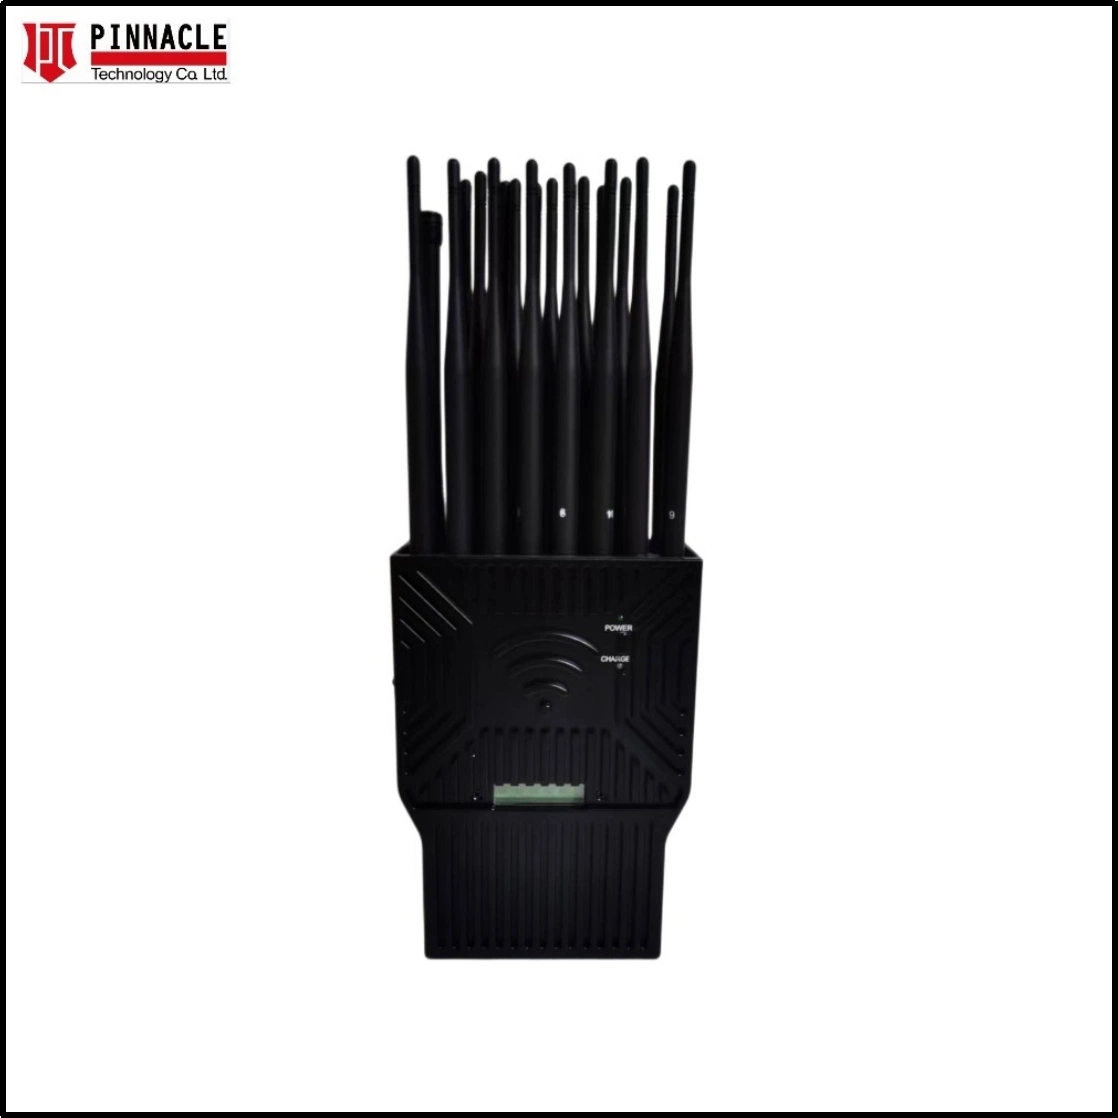 16-antennes GPS portable GSM Bluetooth signal Blocker 2g 3G 4G brouilleur de signal pour téléphone portable 5g WiFi 2,4G/5,8g